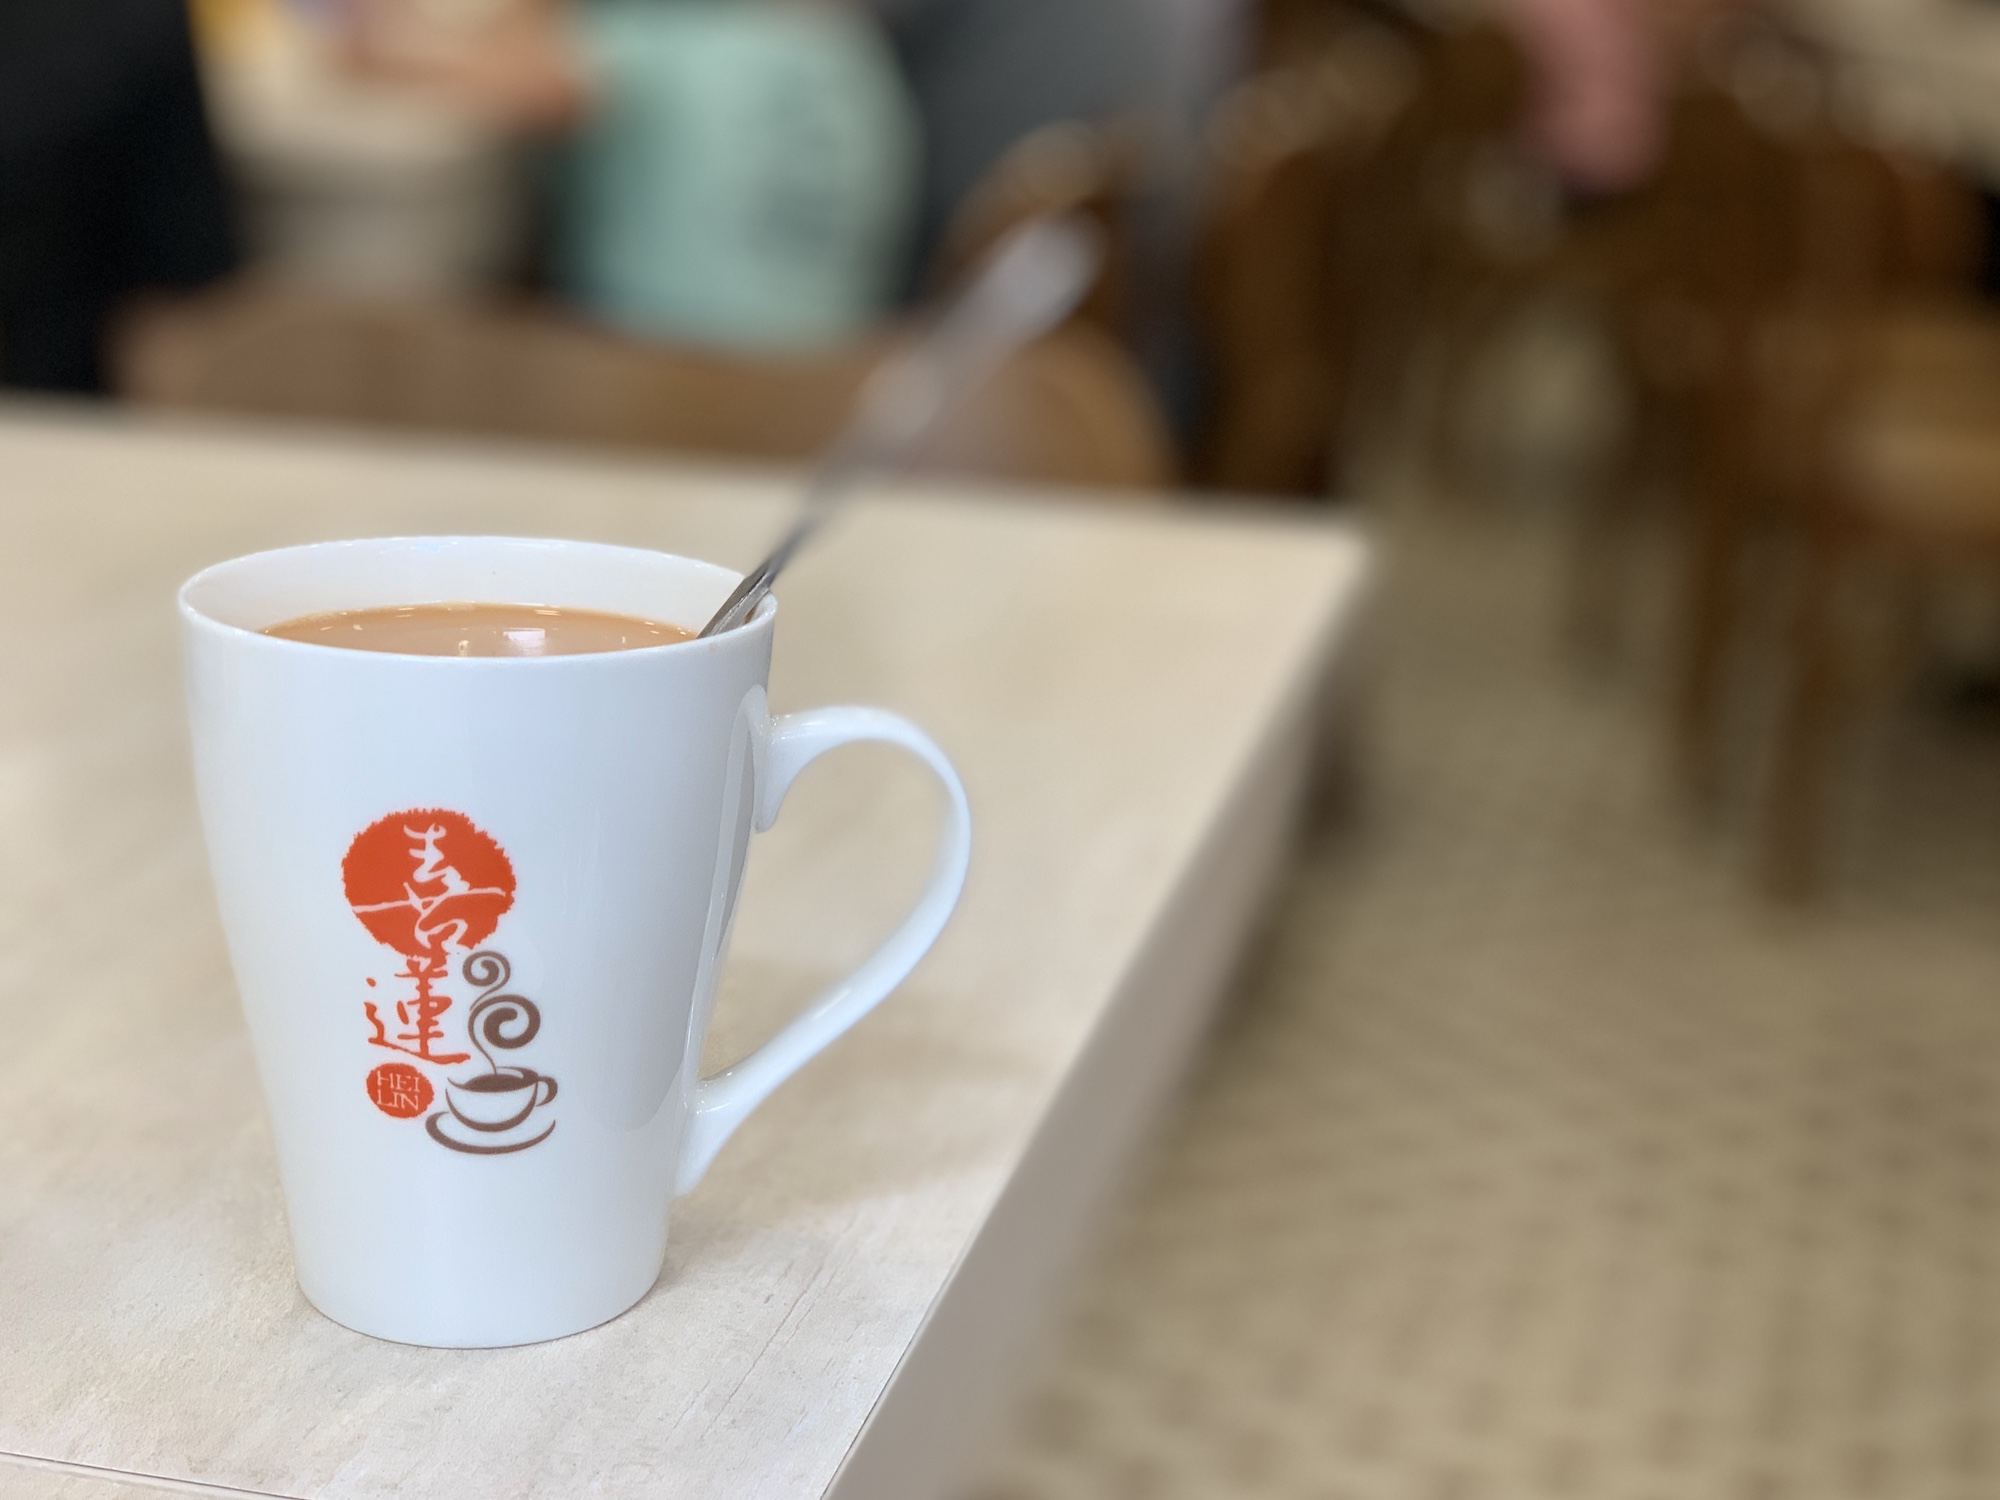 Hei Lin Cafe Interior Milk Tea Hot on the Table Macau Lifestyle